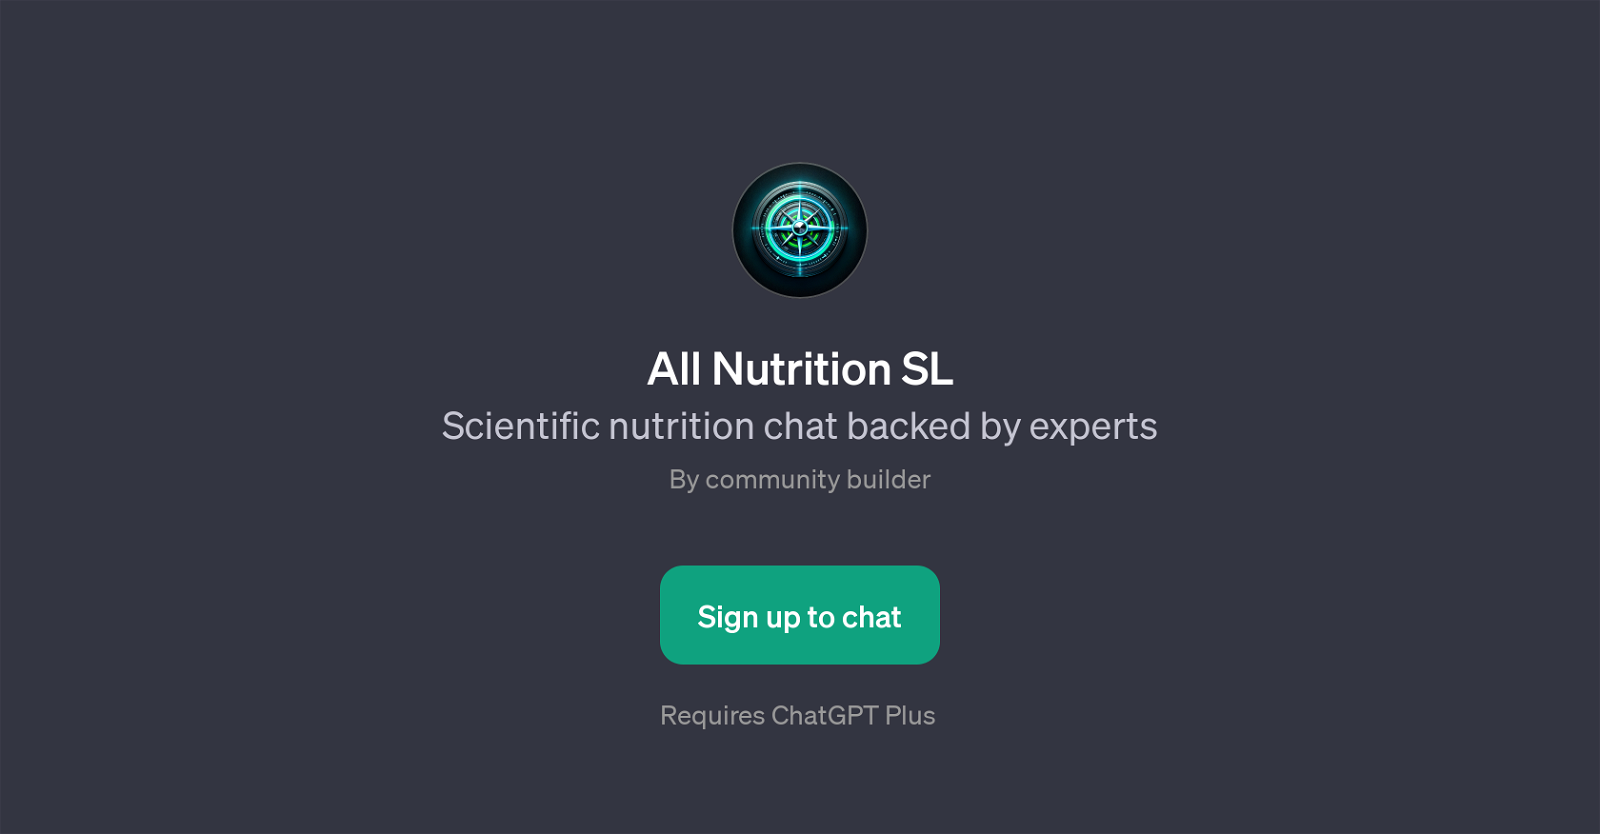 All Nutrition SL website